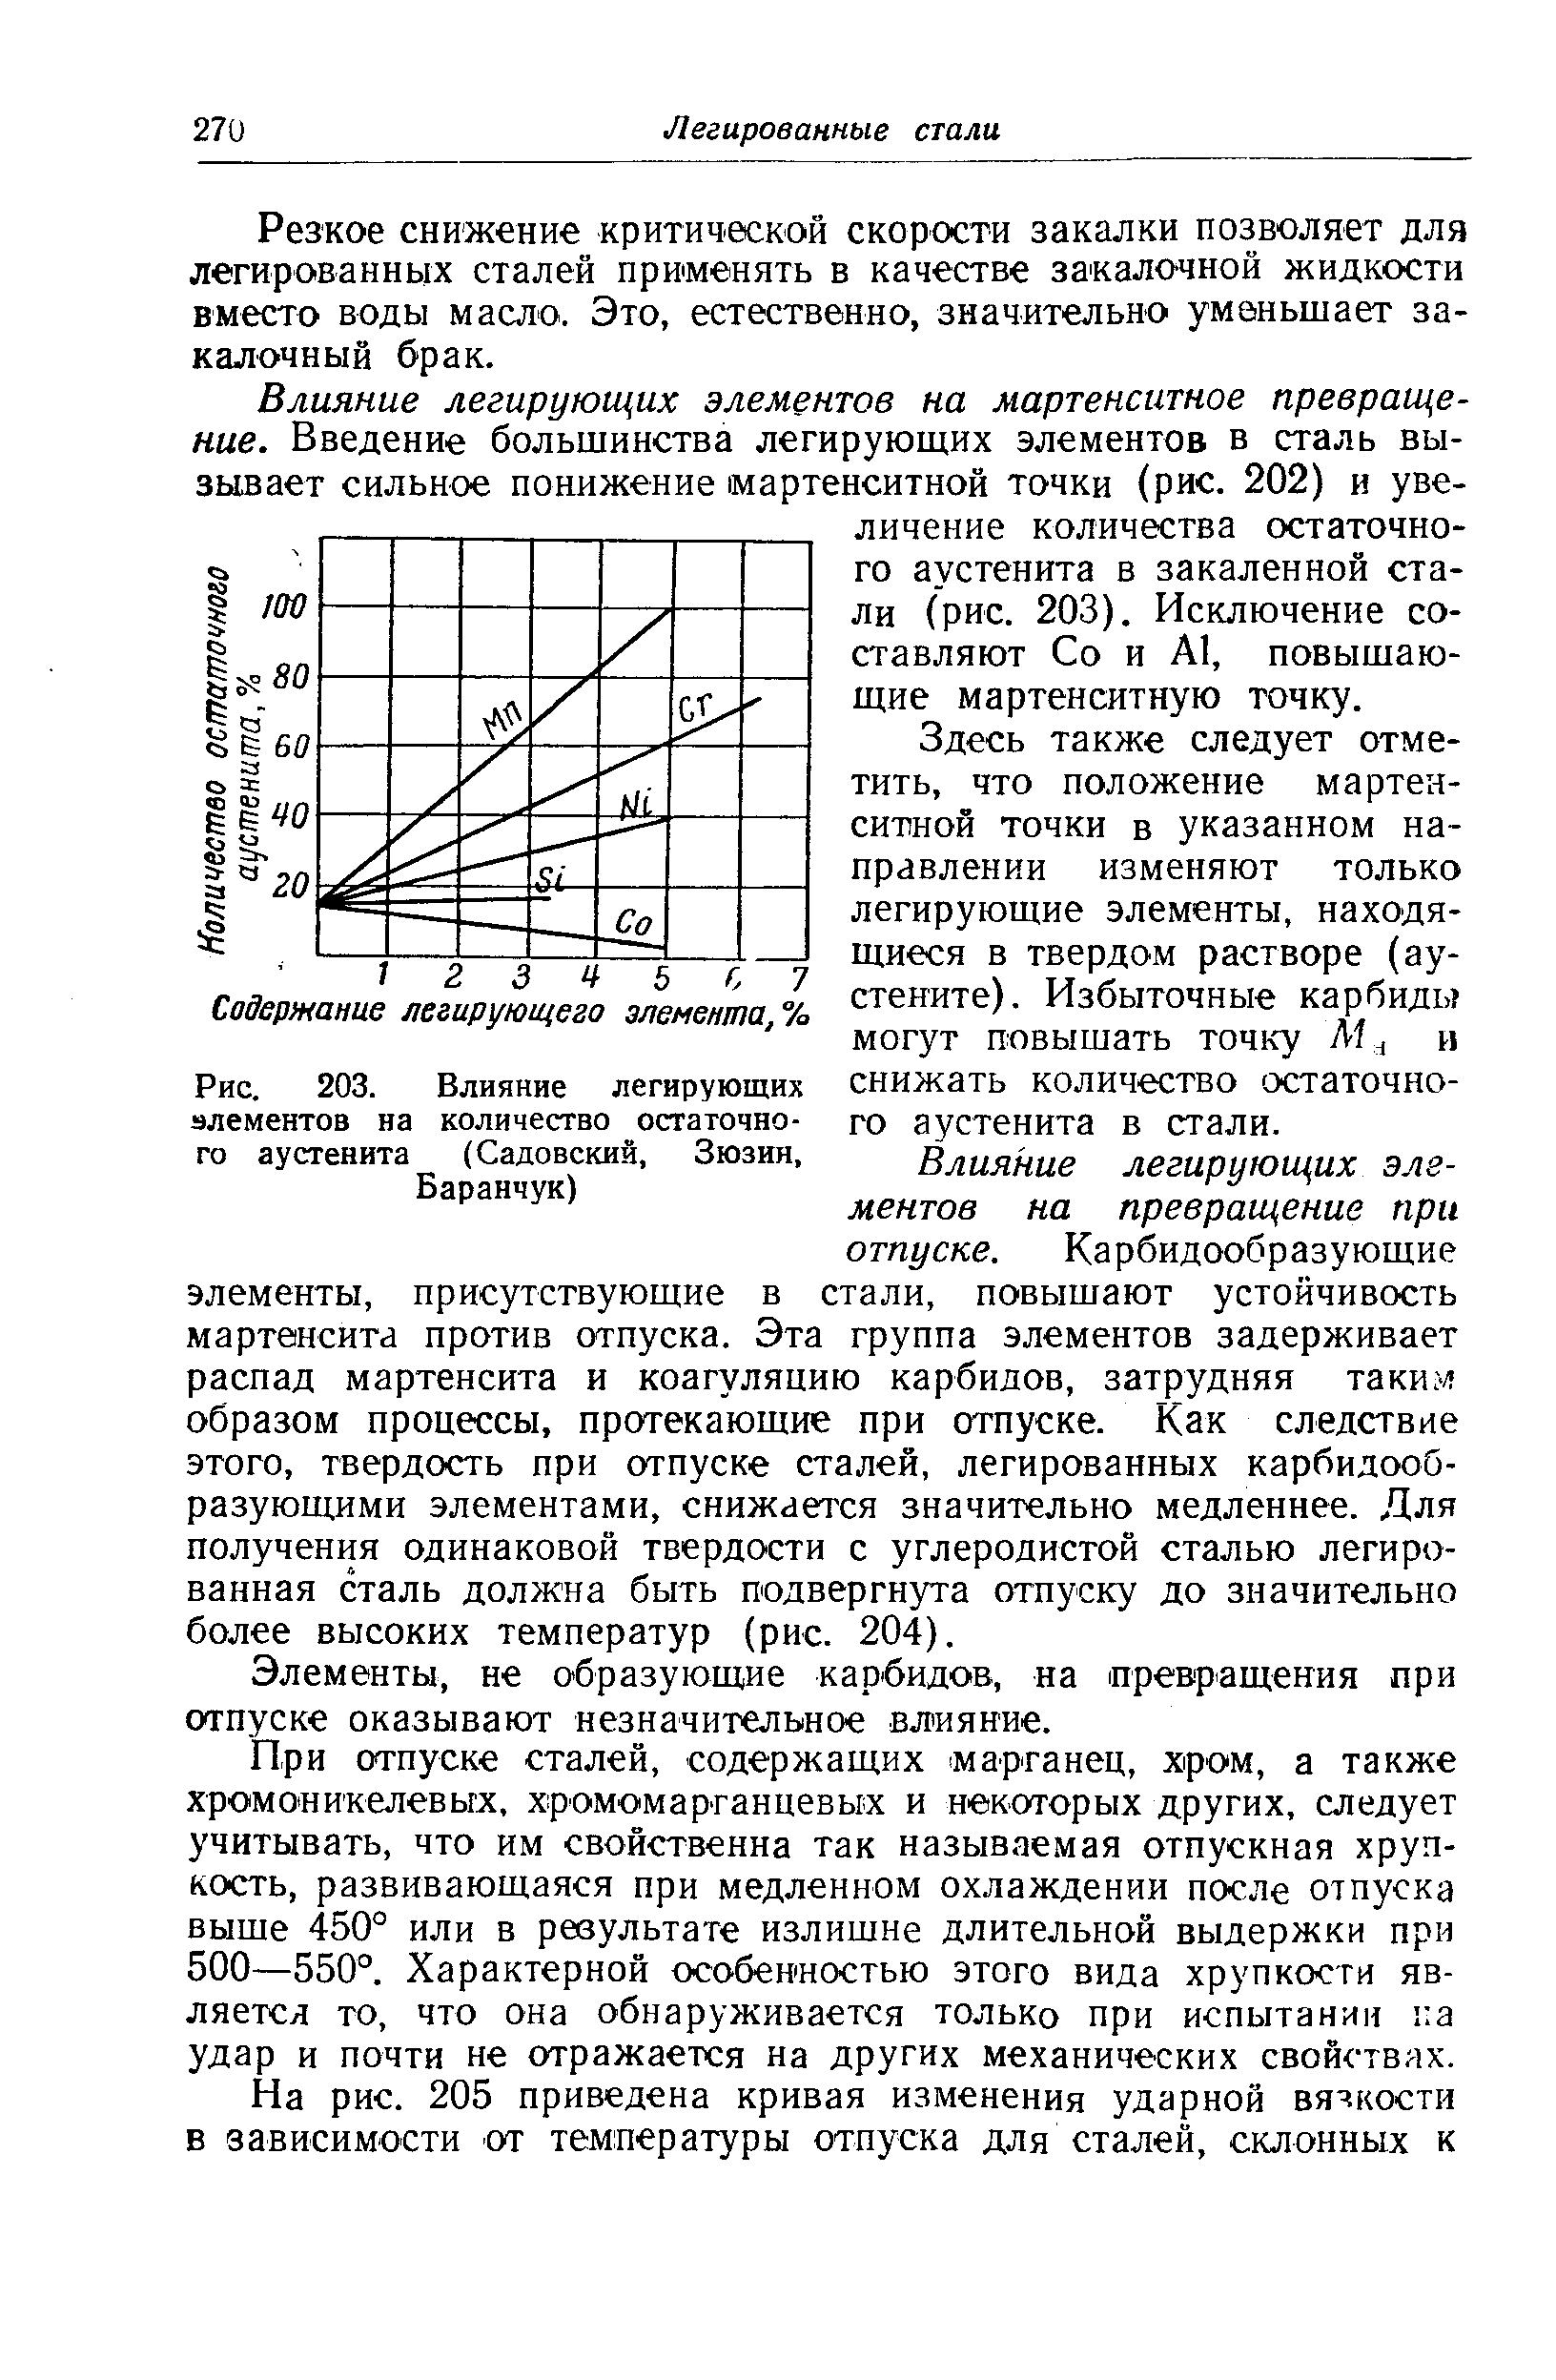 Рис. 203. <a href="/info/58162">Влияние легирующих элементов</a> на количество остаточного аустенита (Садовский, Зюзин, Баранчук)